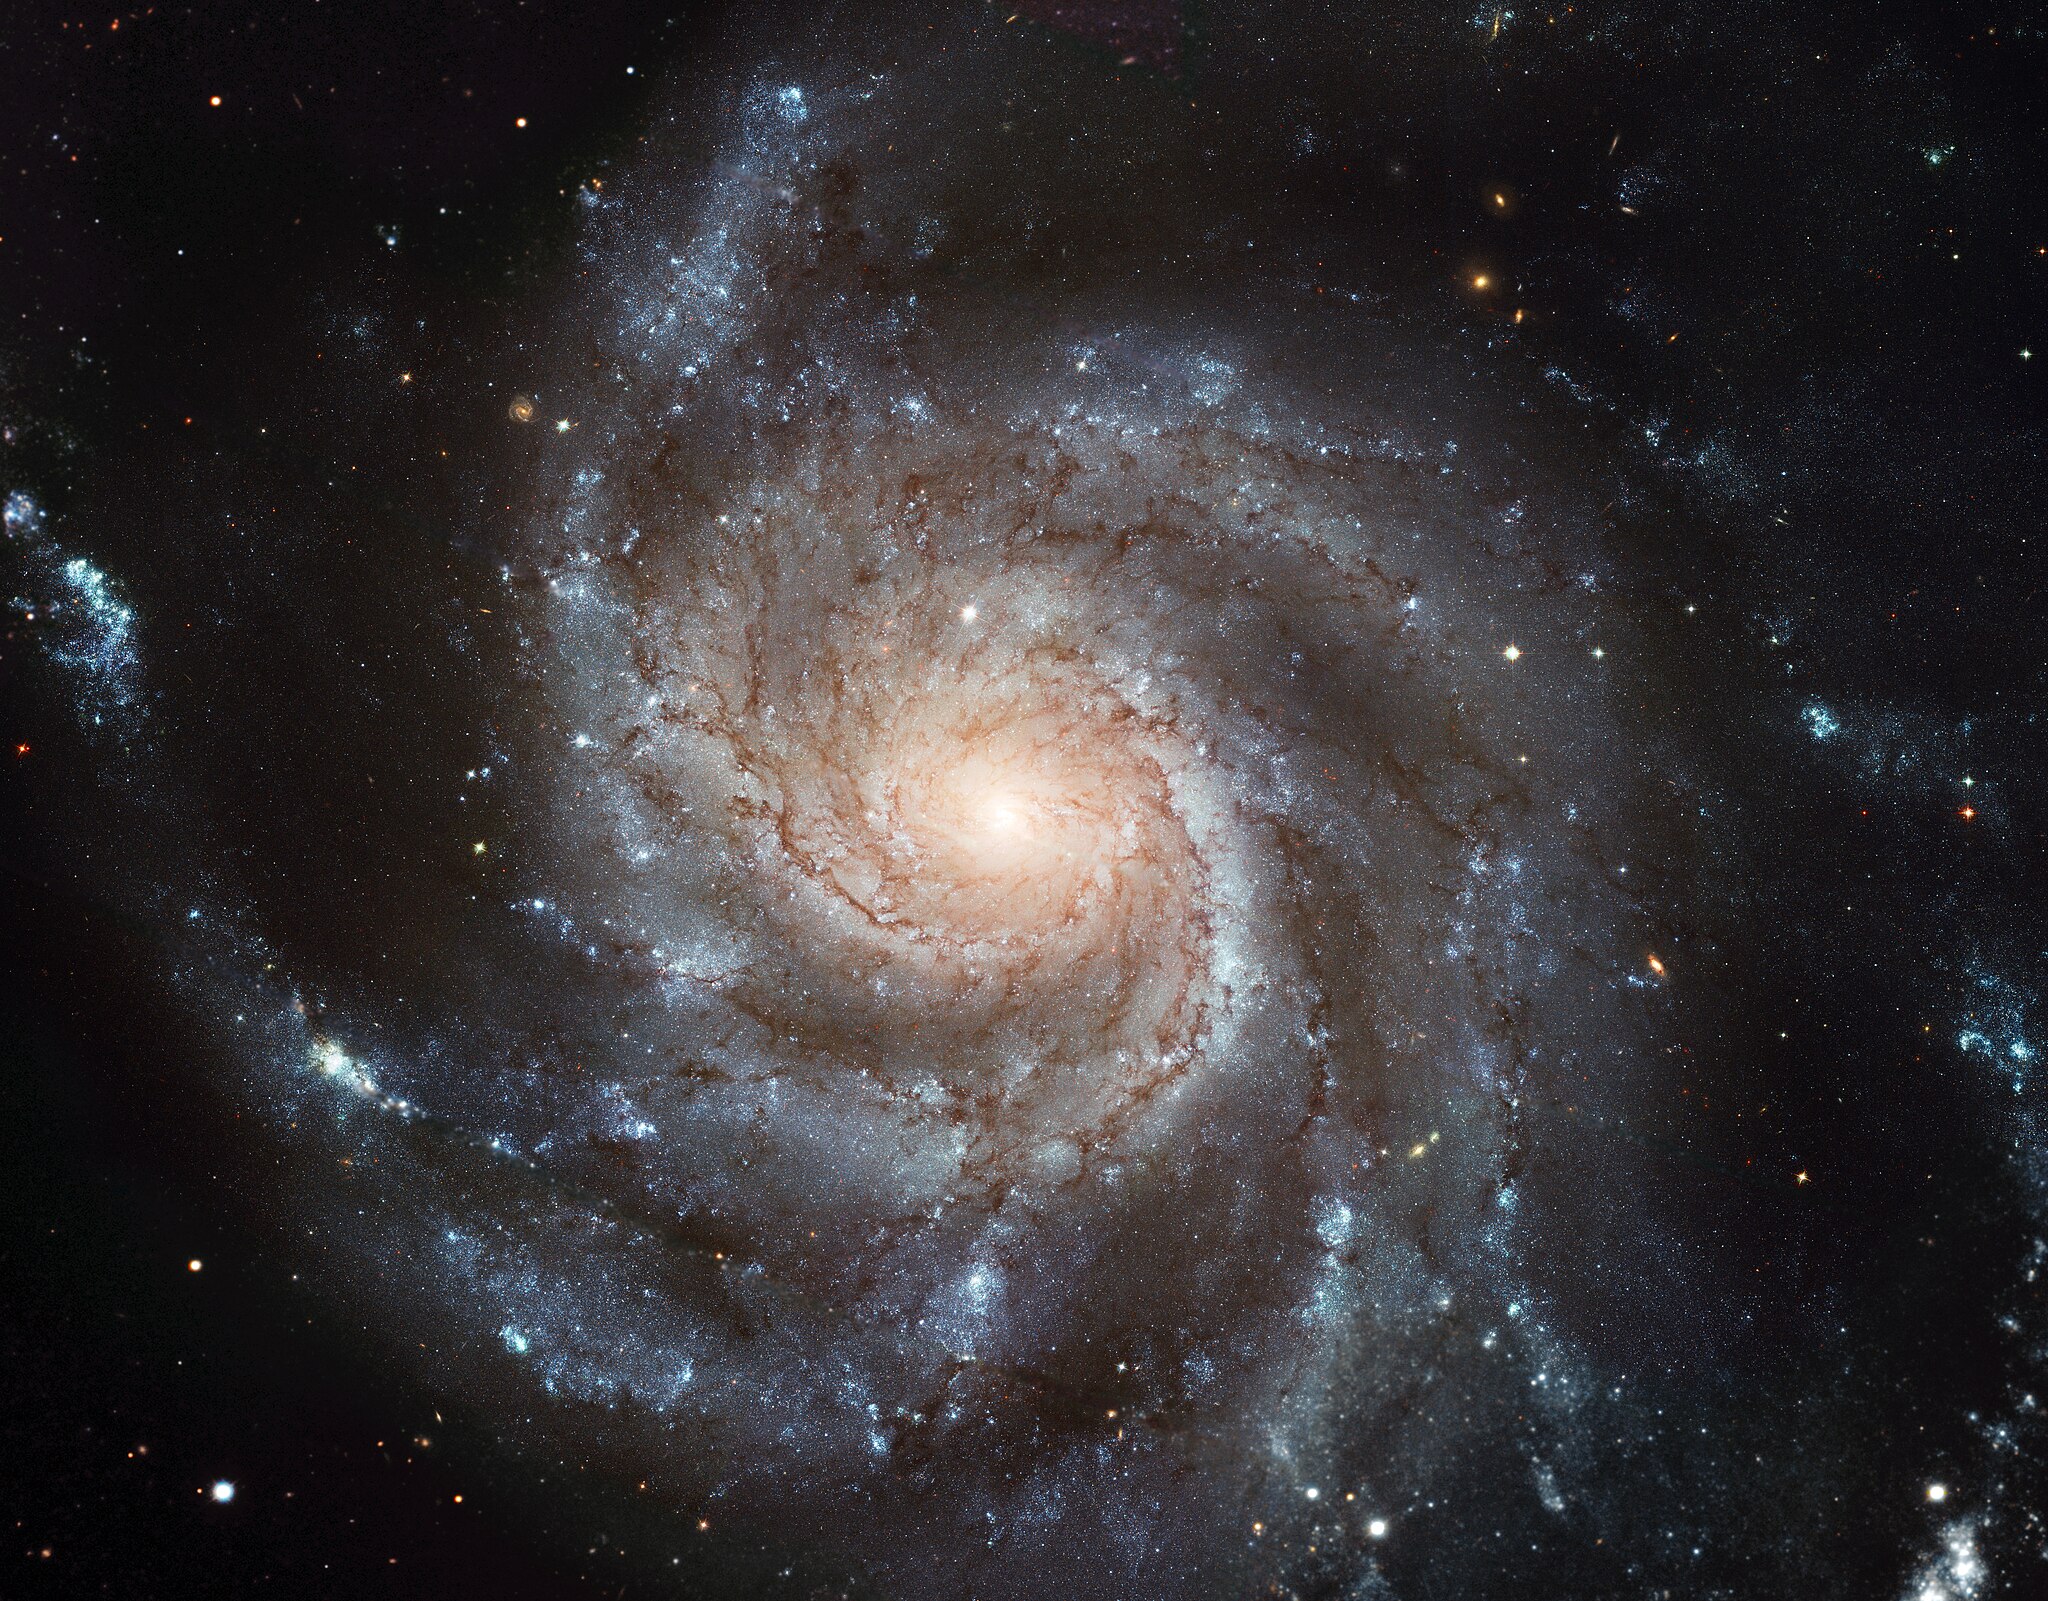 Galaxie Messier 101 (M101, NGC 5457) přezdívaná Větrník se nachází v oblasti souhvězdí Velké medvědice. Je vzdálená asi 21 milionů světelných let od Země. Portrét galaxie je složen z 51 jednotlivých expozic Hubblova teleskopu a snímků z pozemních dal